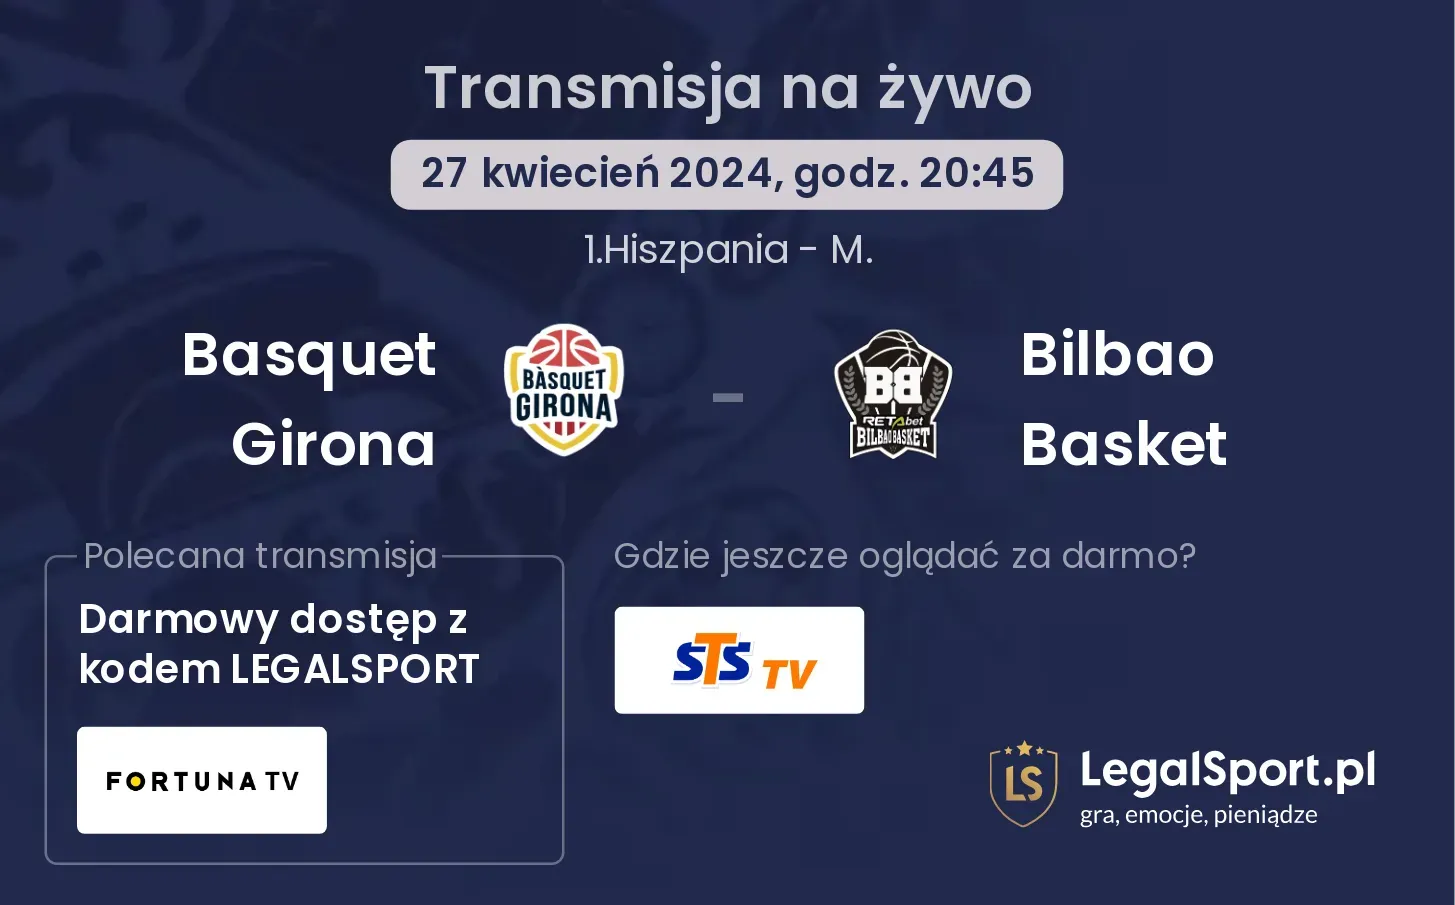 Basquet Girona - Bilbao Basket transmisja na żywo